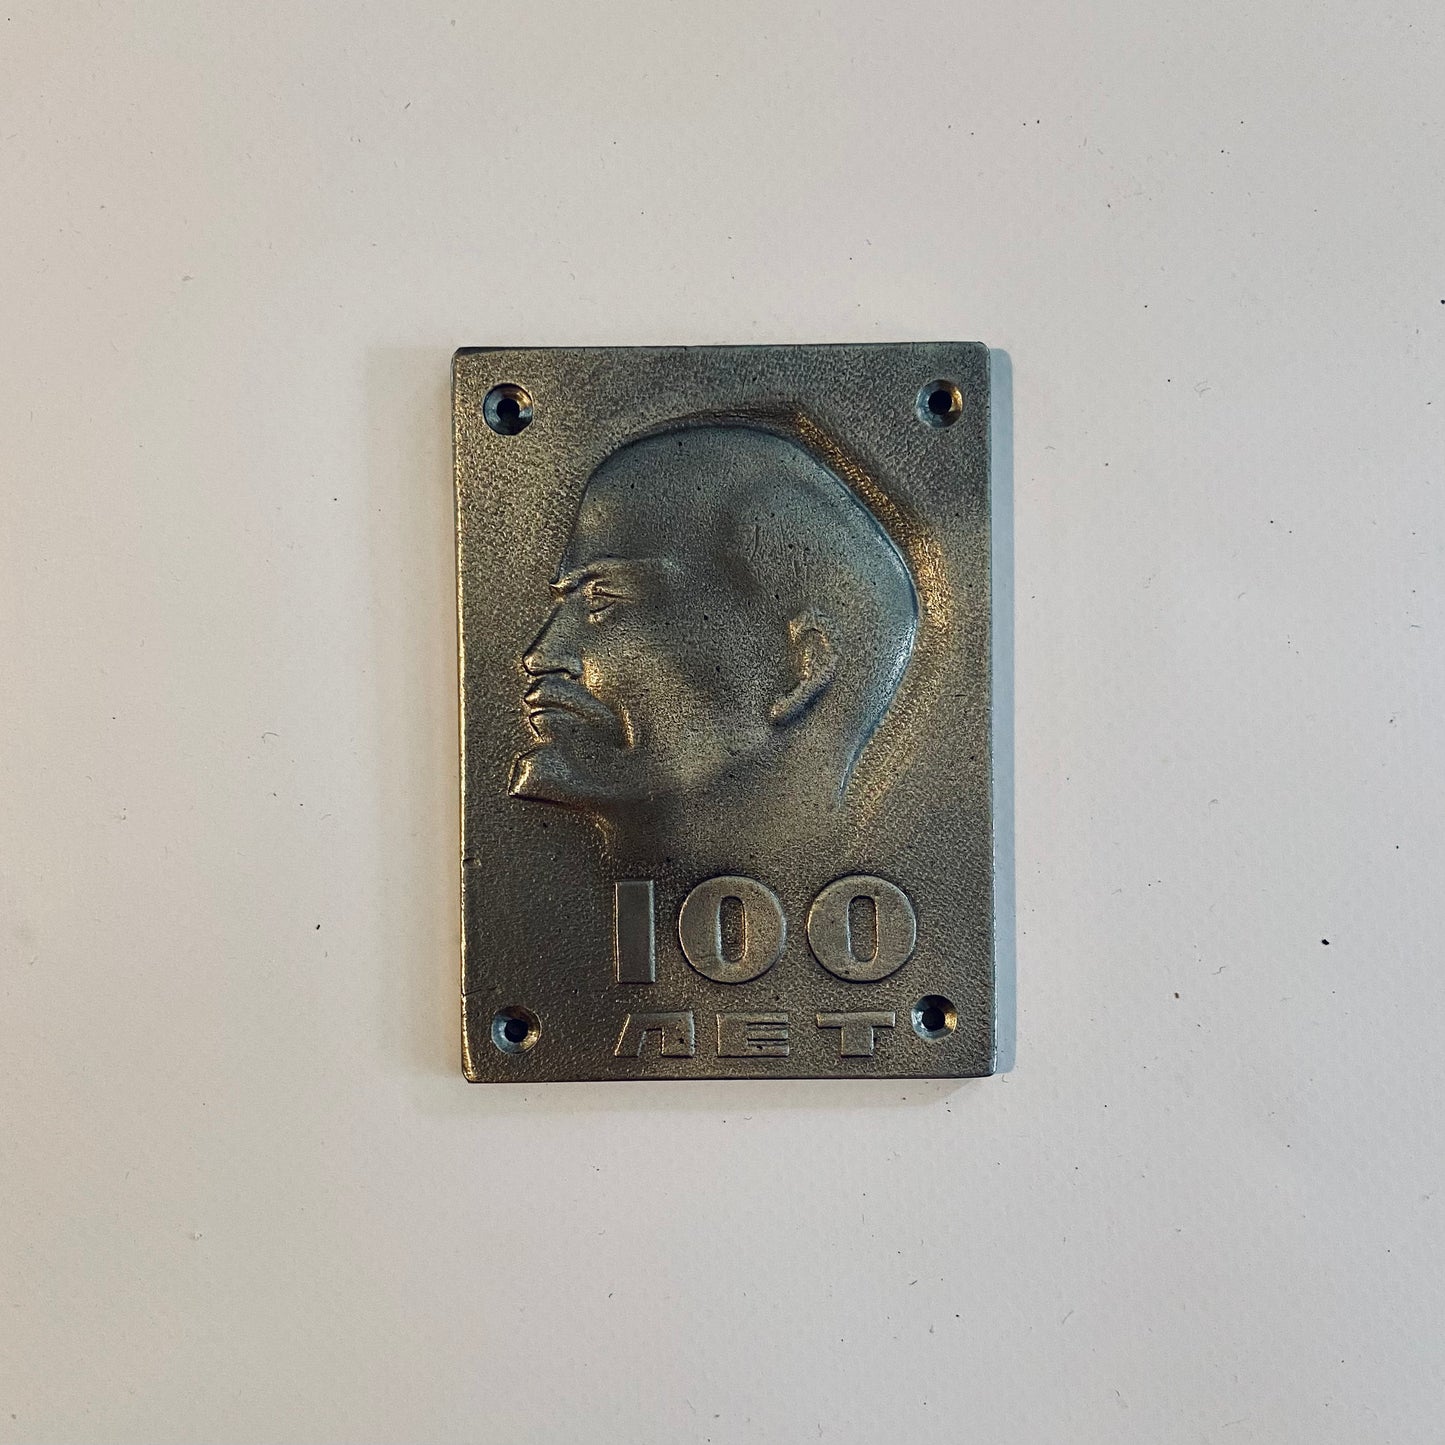 Plaque, titanium, Vladimir Lenin, 100th anniversary, USSR (CCCP), 1970